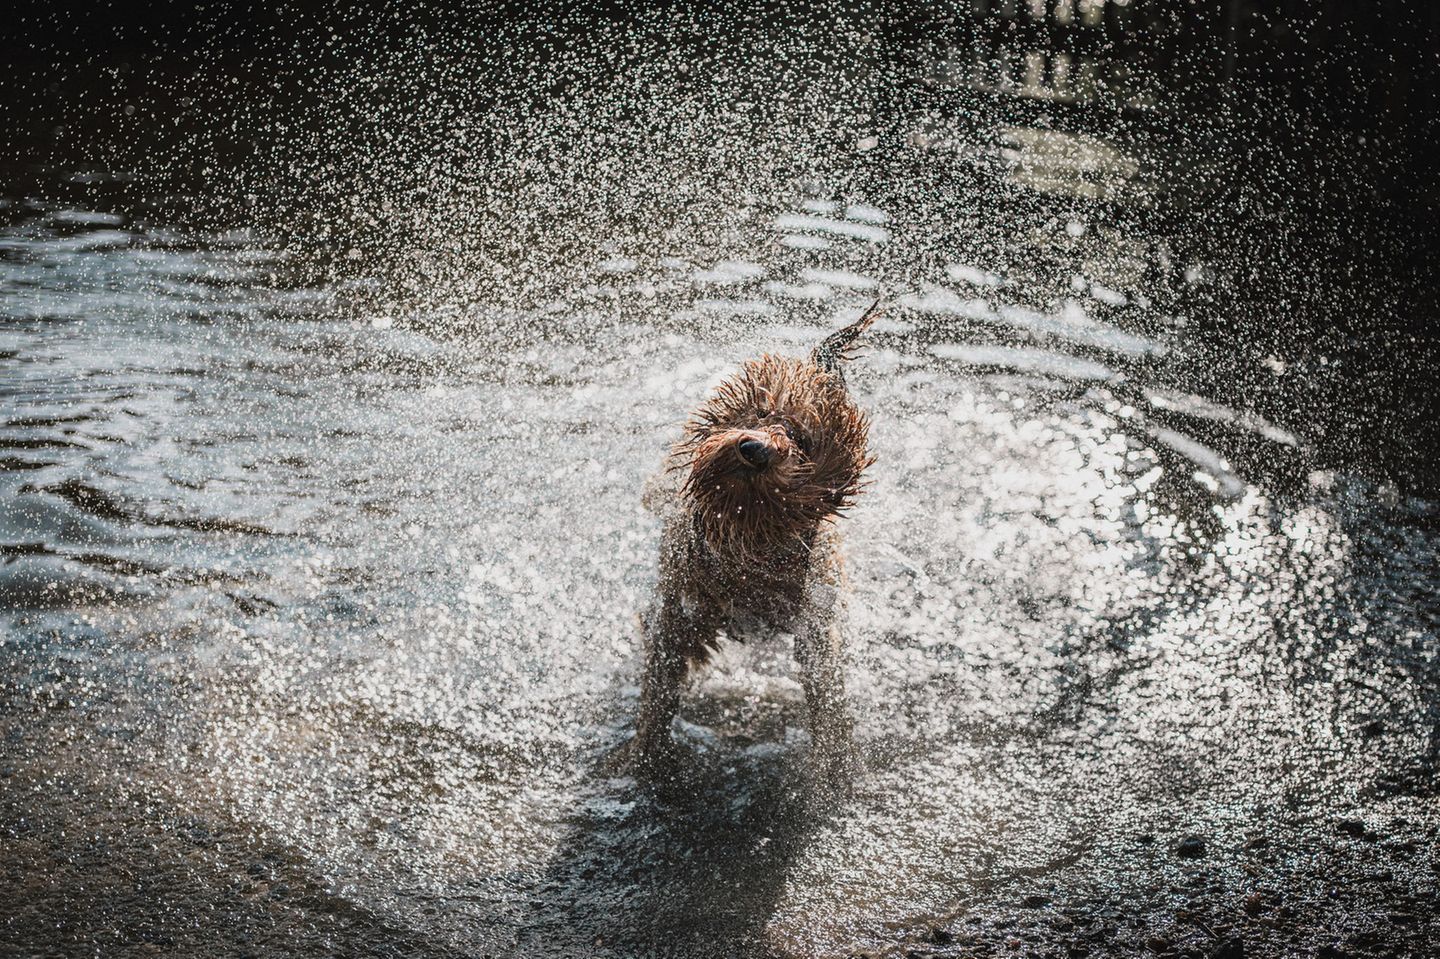 Alessandro Po lichtete seinen Hund Max dabei ab, wie er sich Wasser aus dem Fell schüttelte. Sein durch die Aufnahme verewigtes "Igelgesicht" amüsierte den Fotografen nachträglich am meisten.